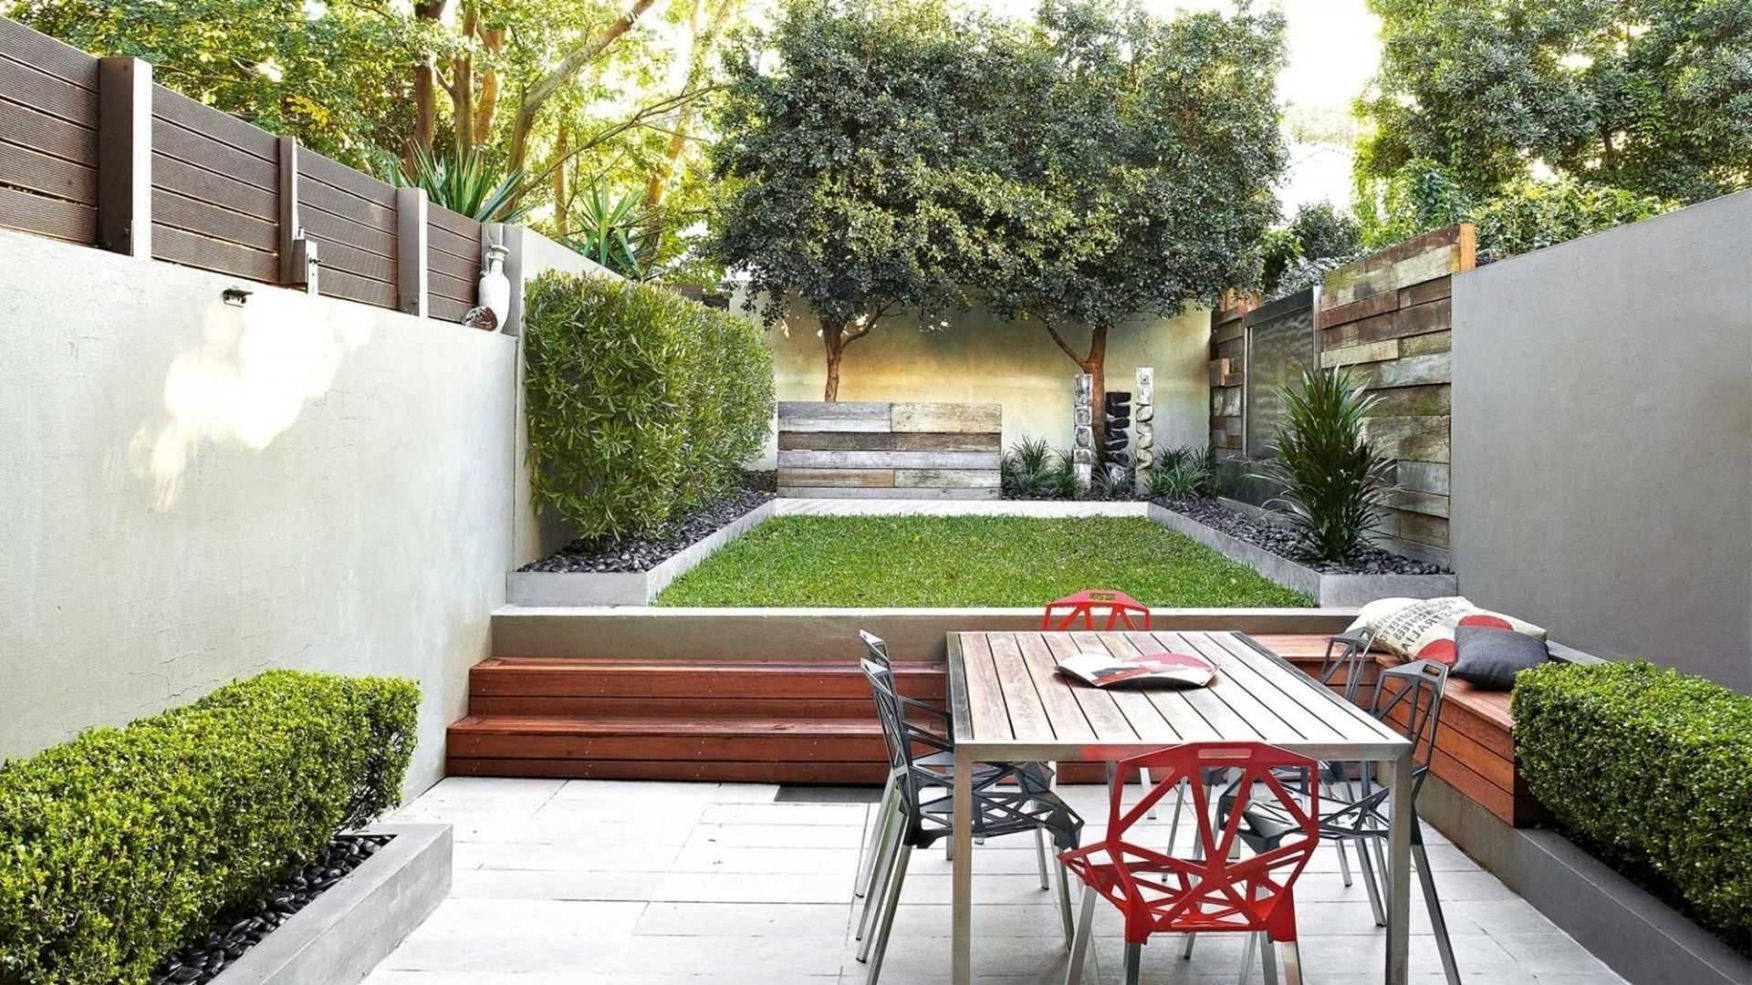 55 Incredible Small Garden Design Ideas To Enhance Your